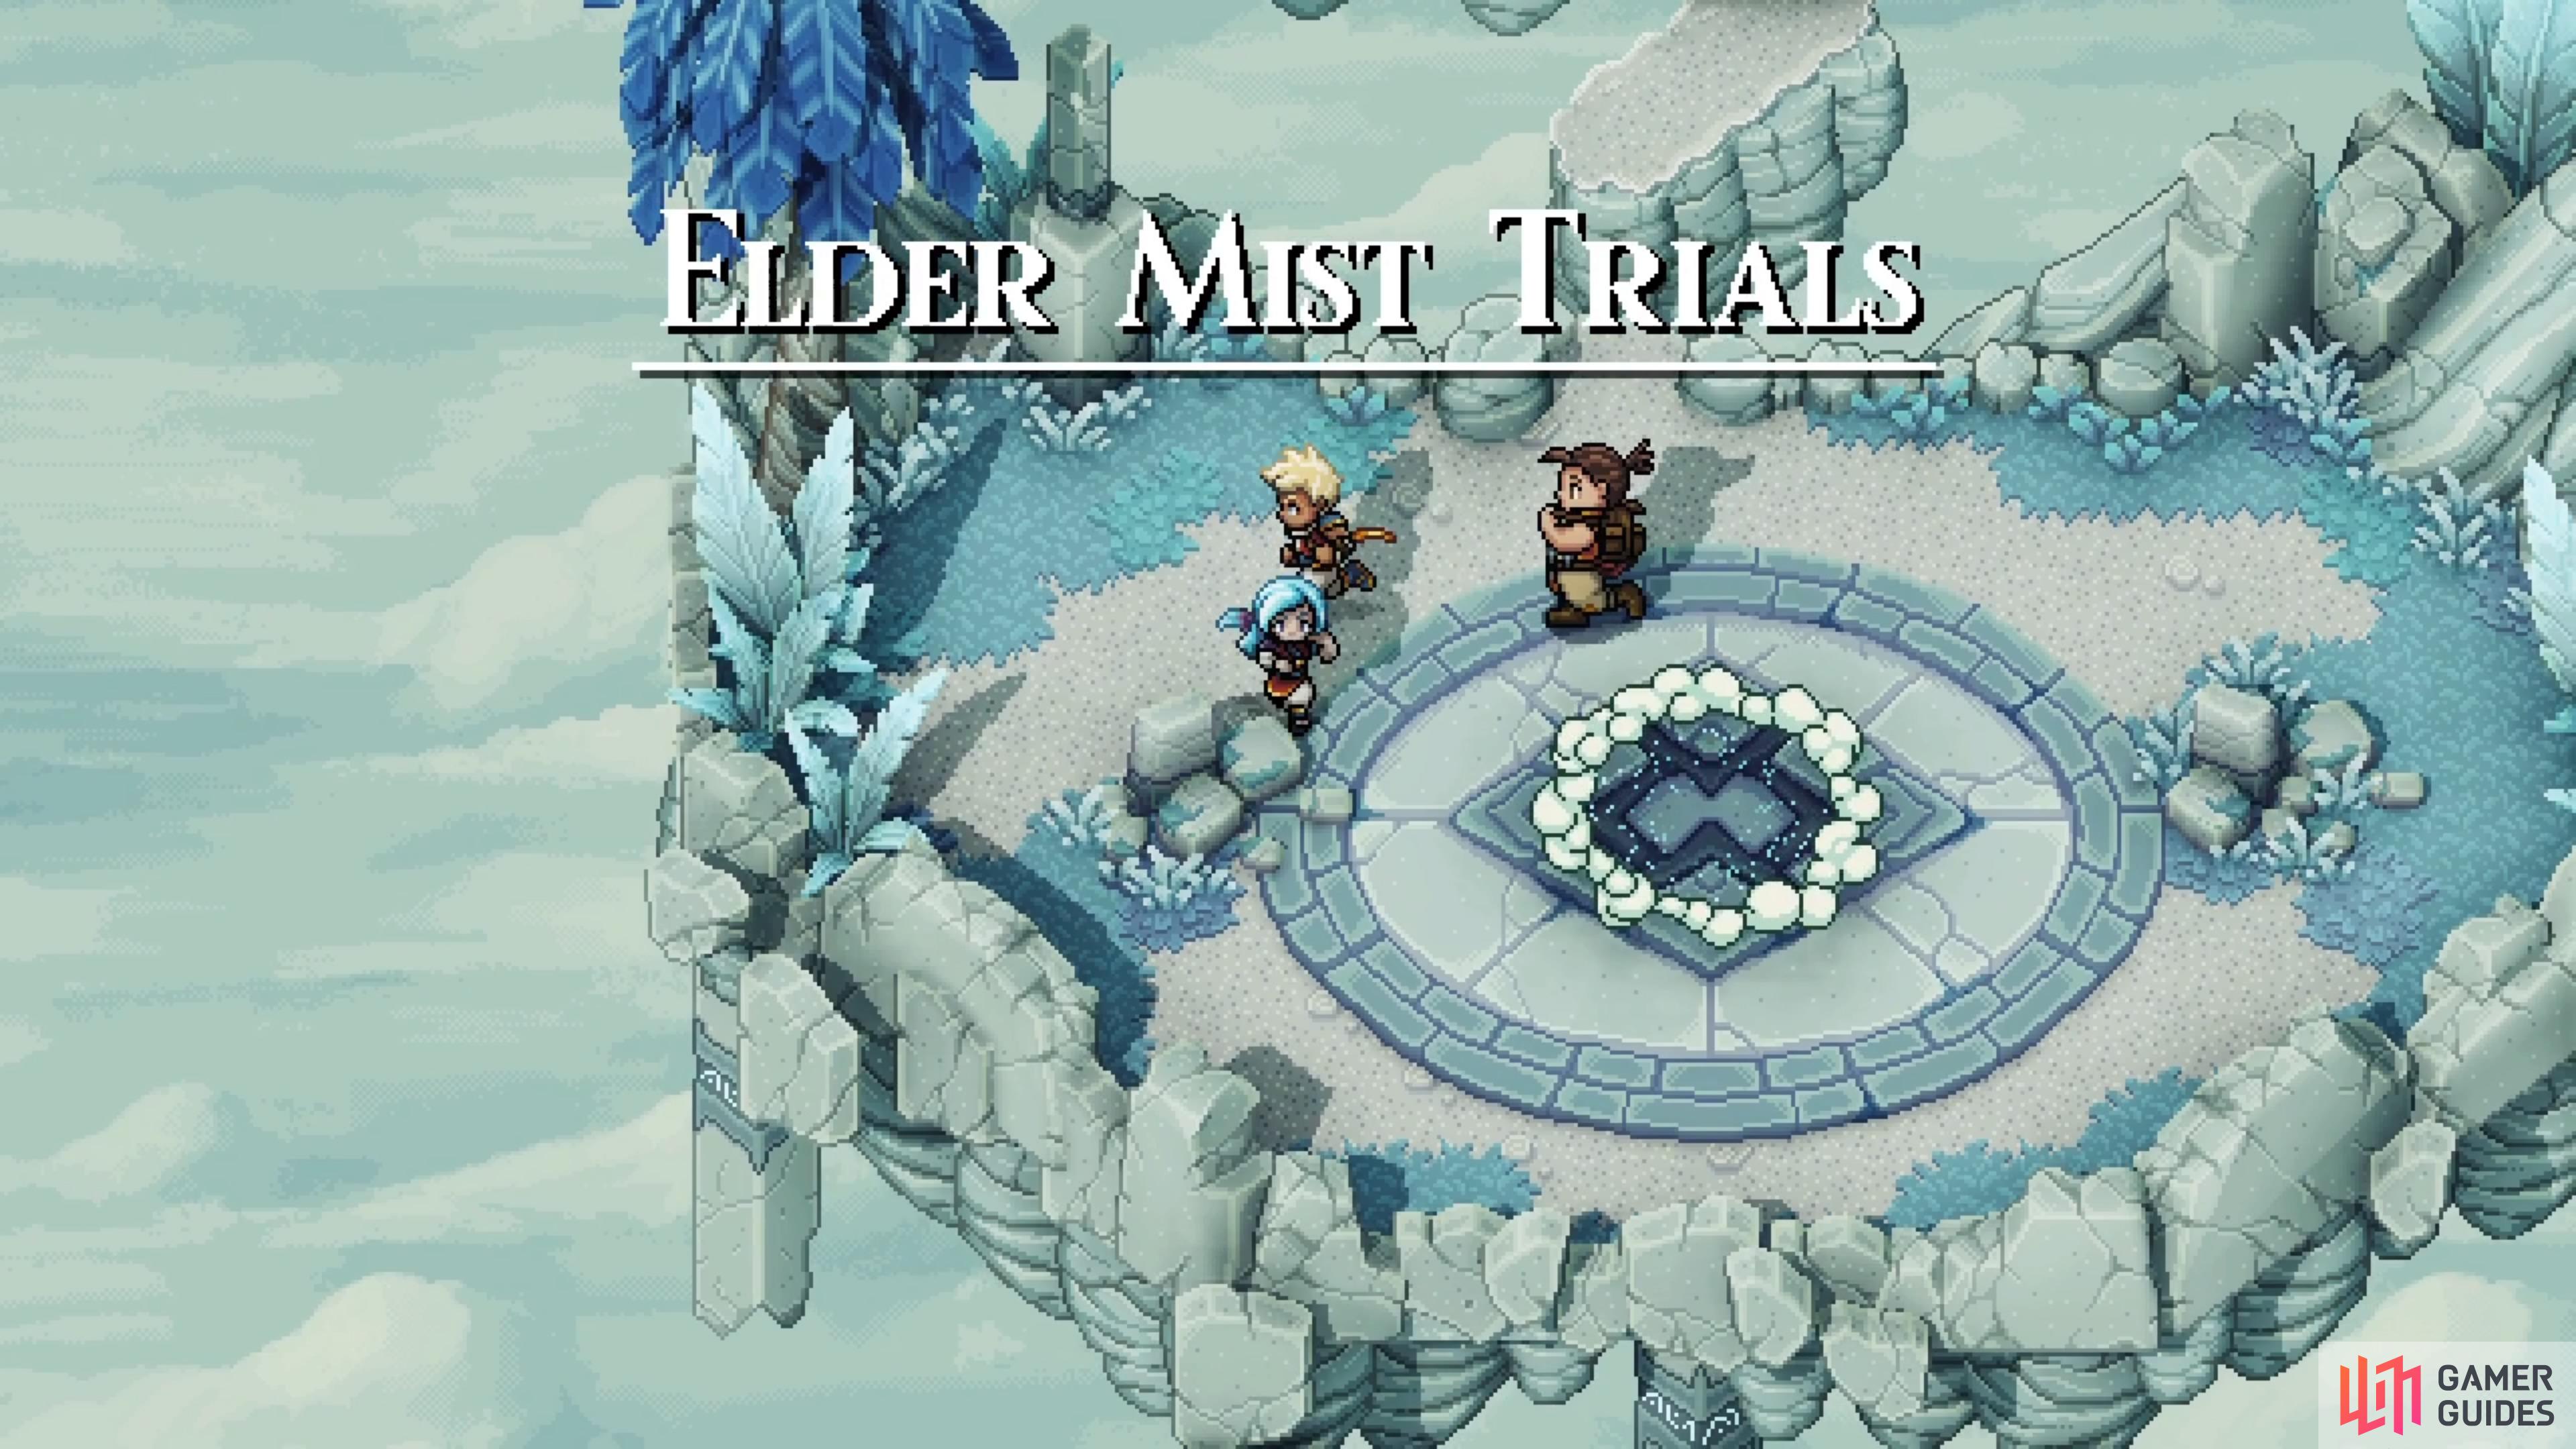 The Elder Mist Trials is your true final test before becoming Solstice Warriors.